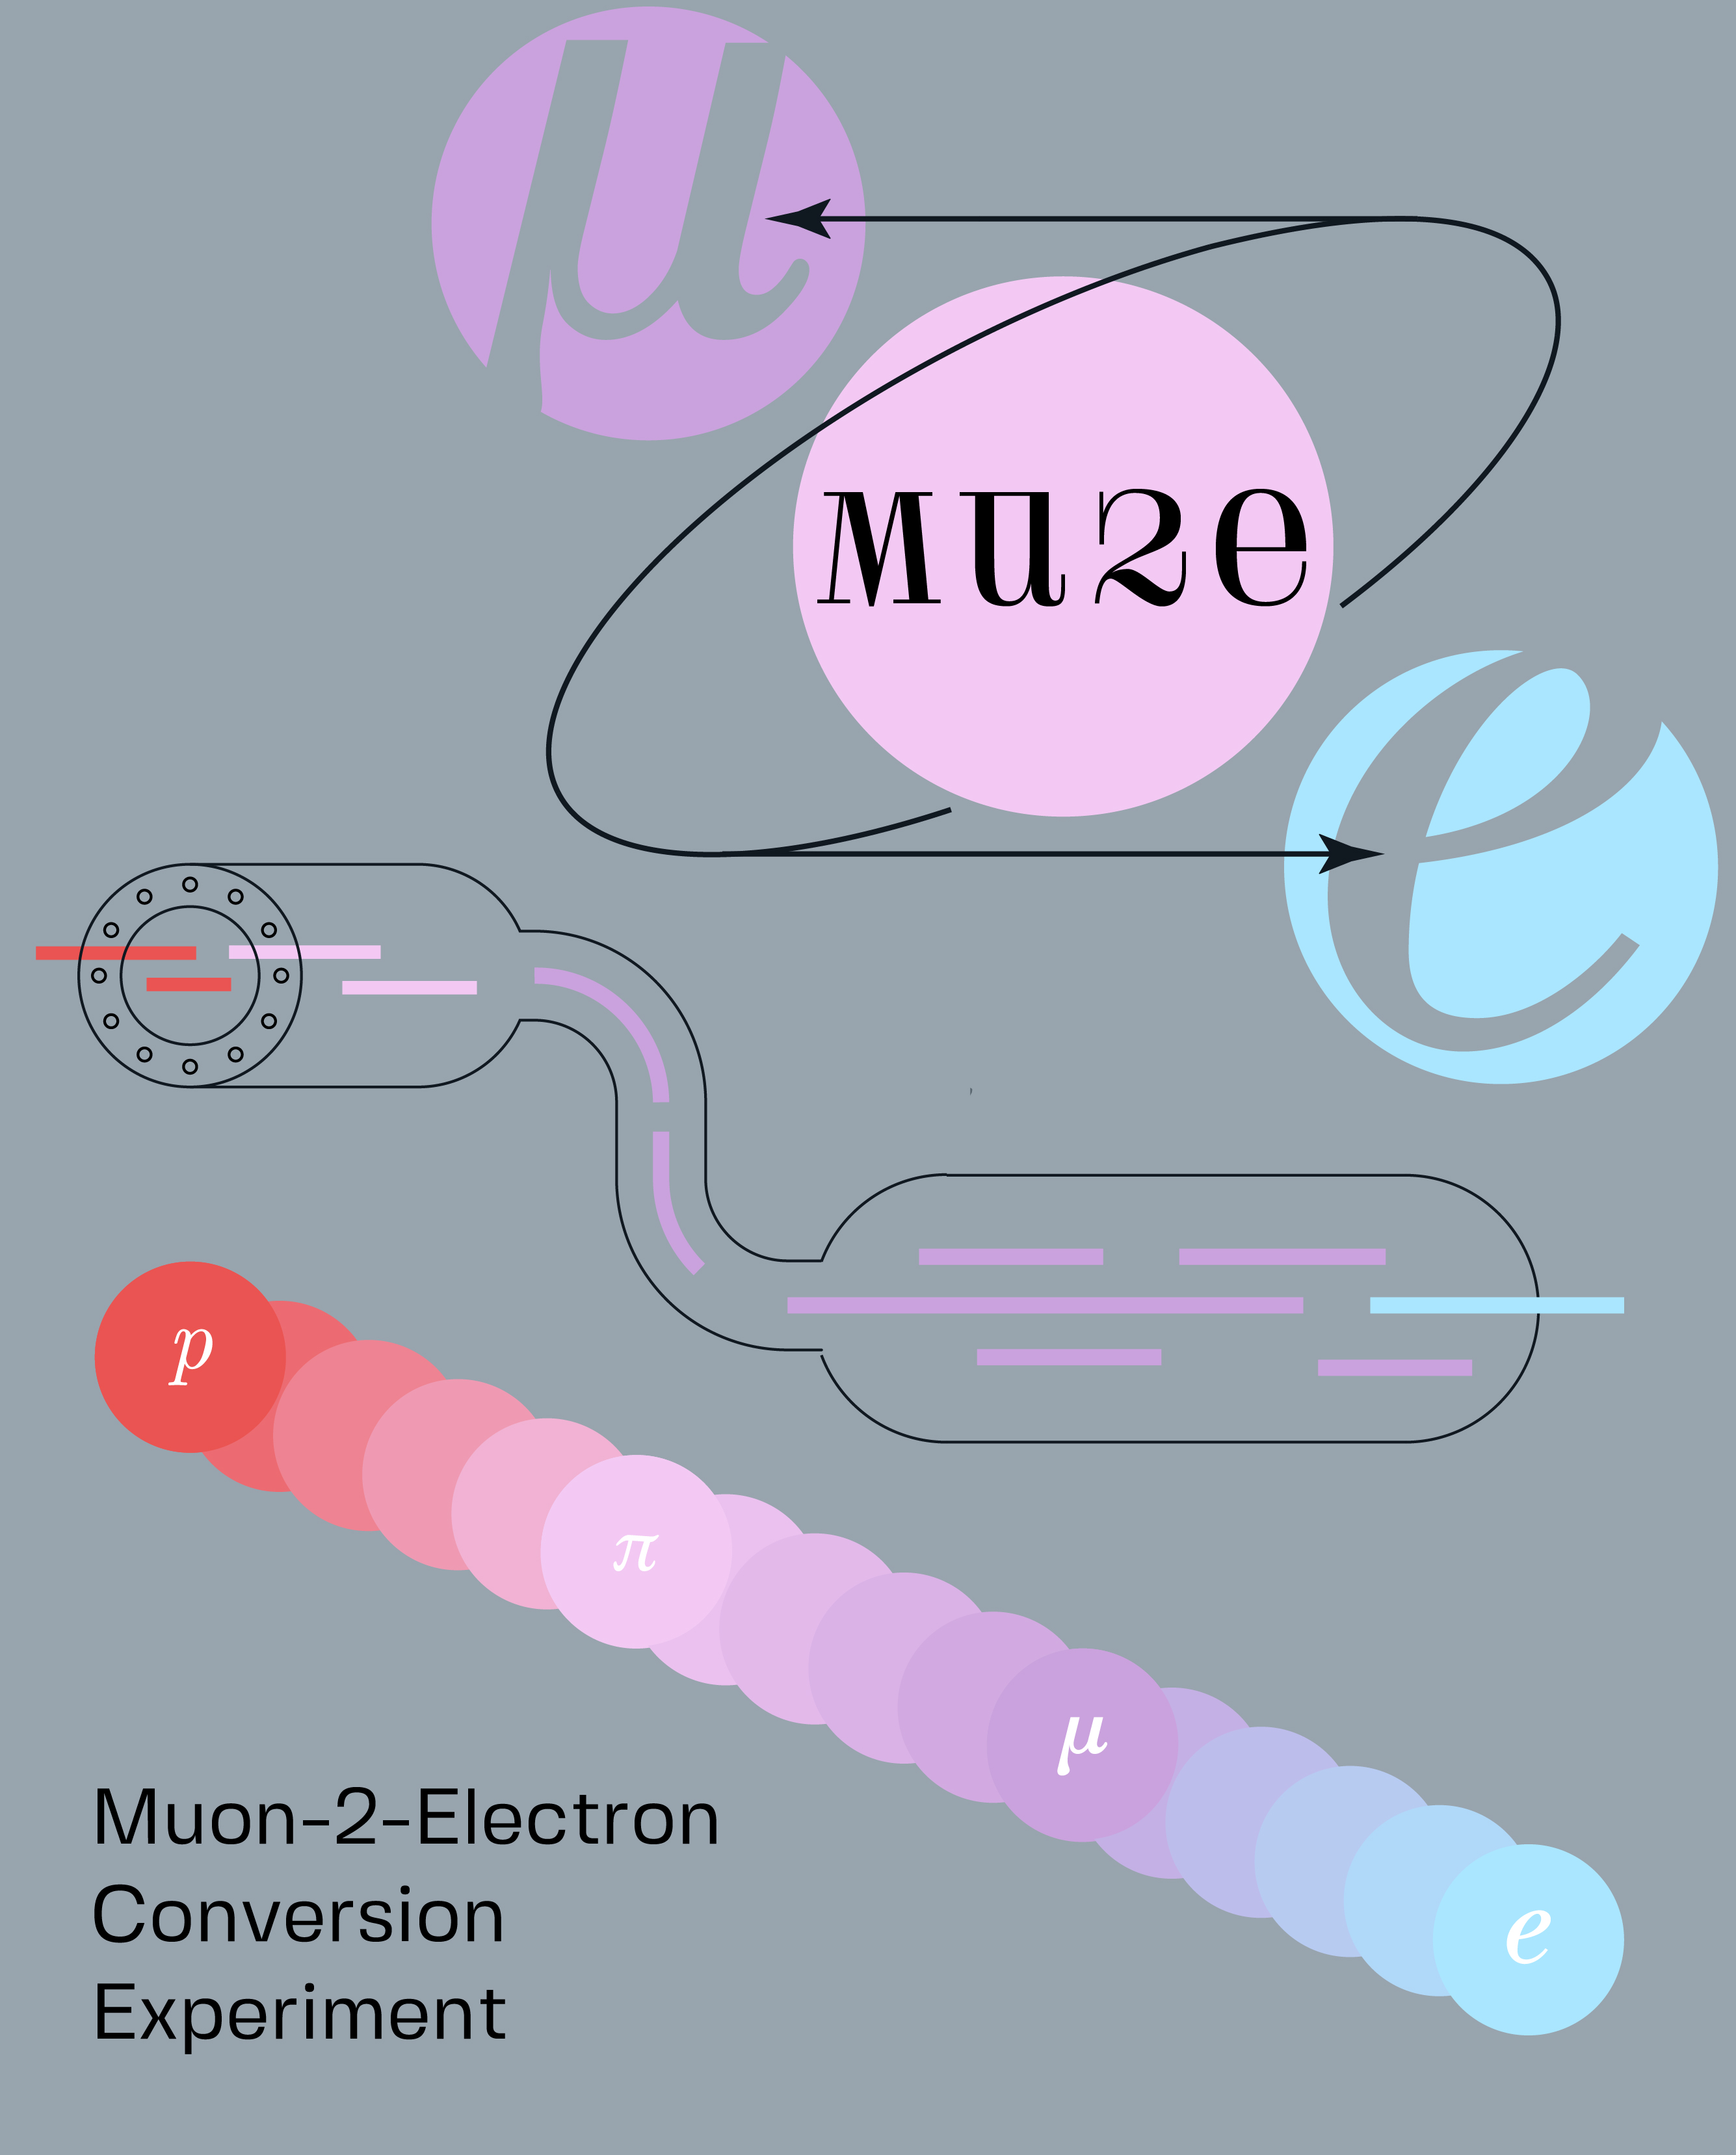 Muon-2-Electron Conversion Experiment